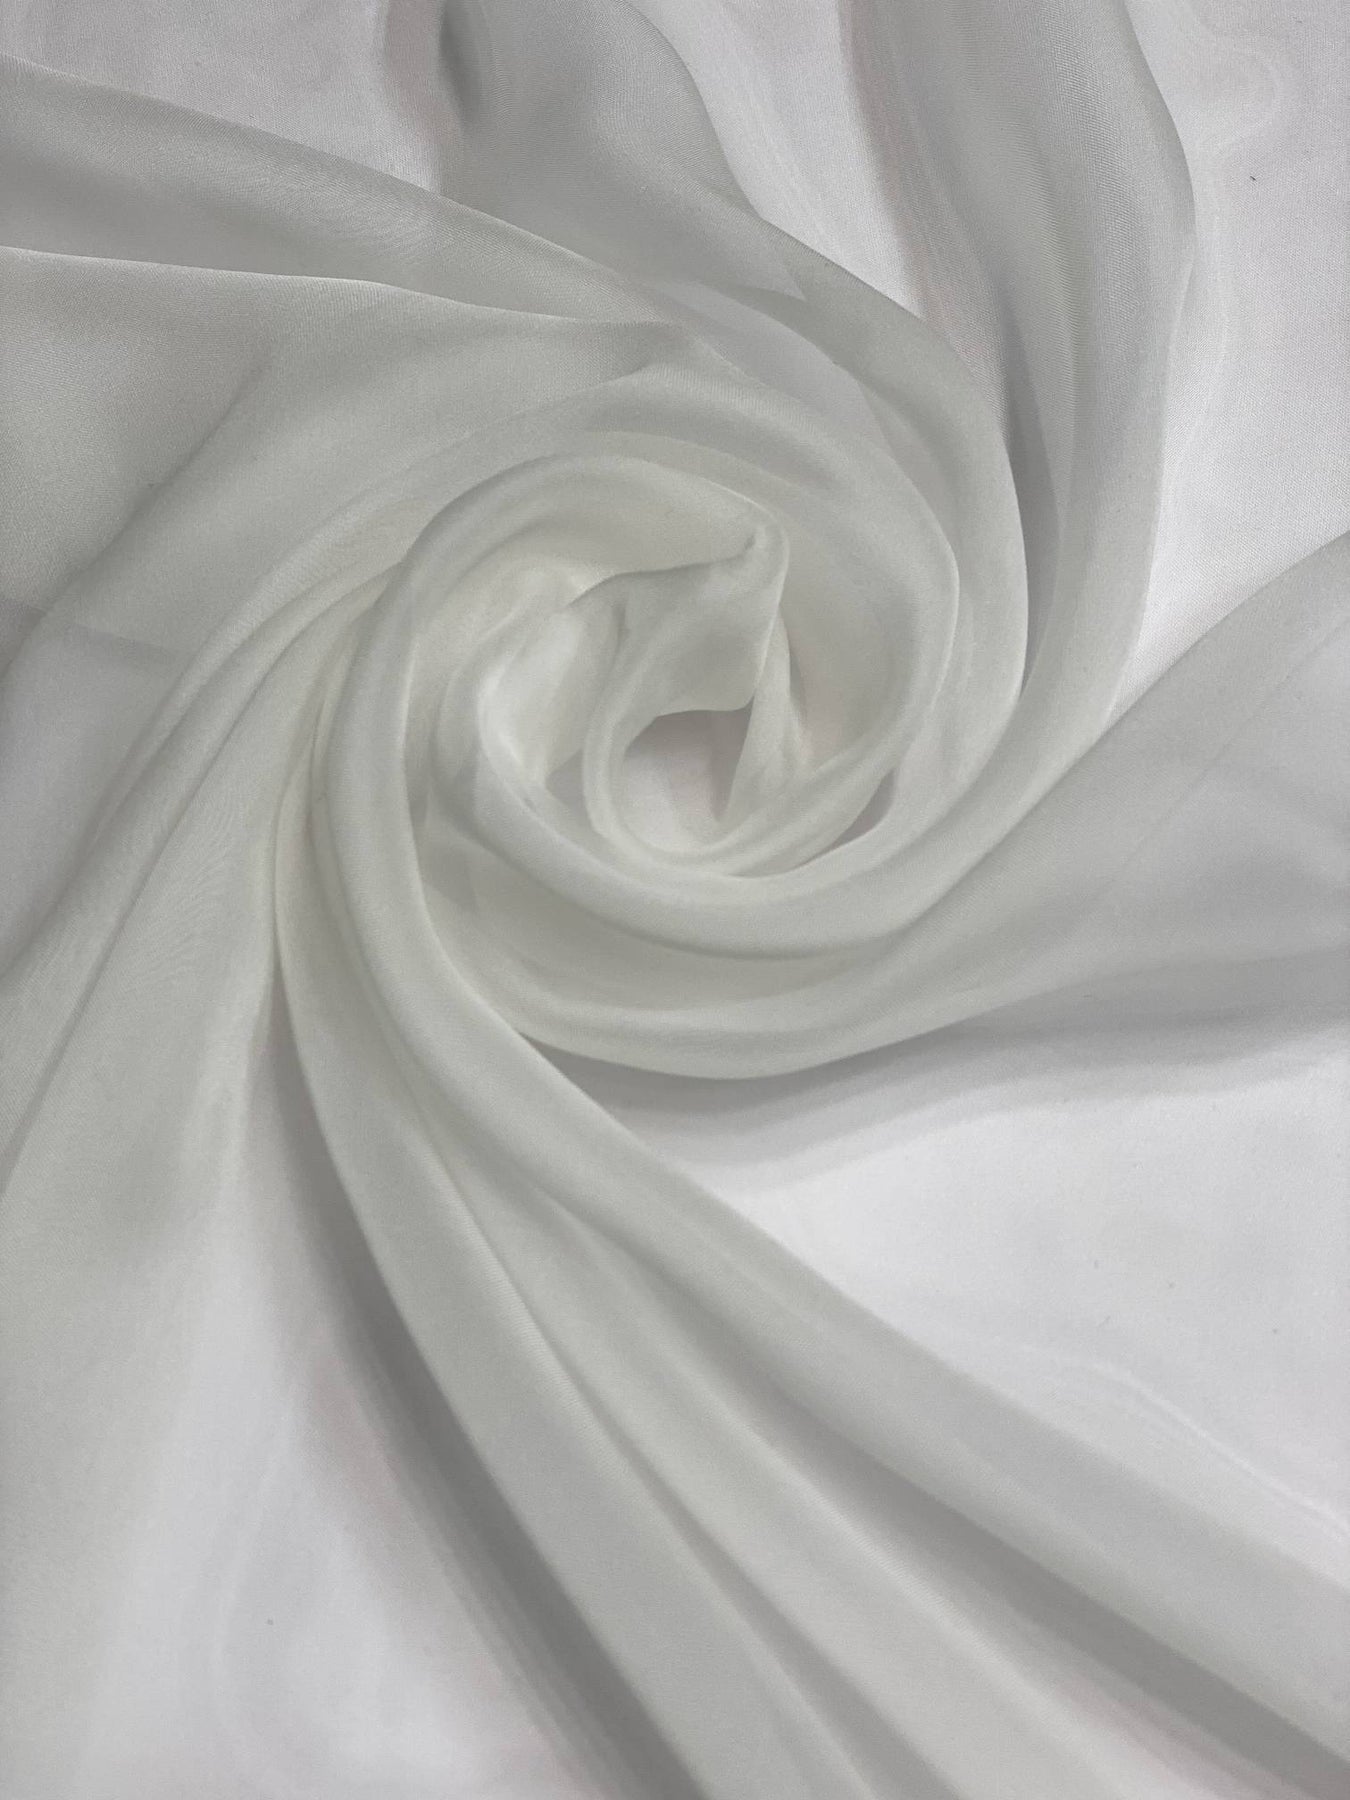 Ivory Iridescent Silk Chiffon IC-100 Fabric By The Yard